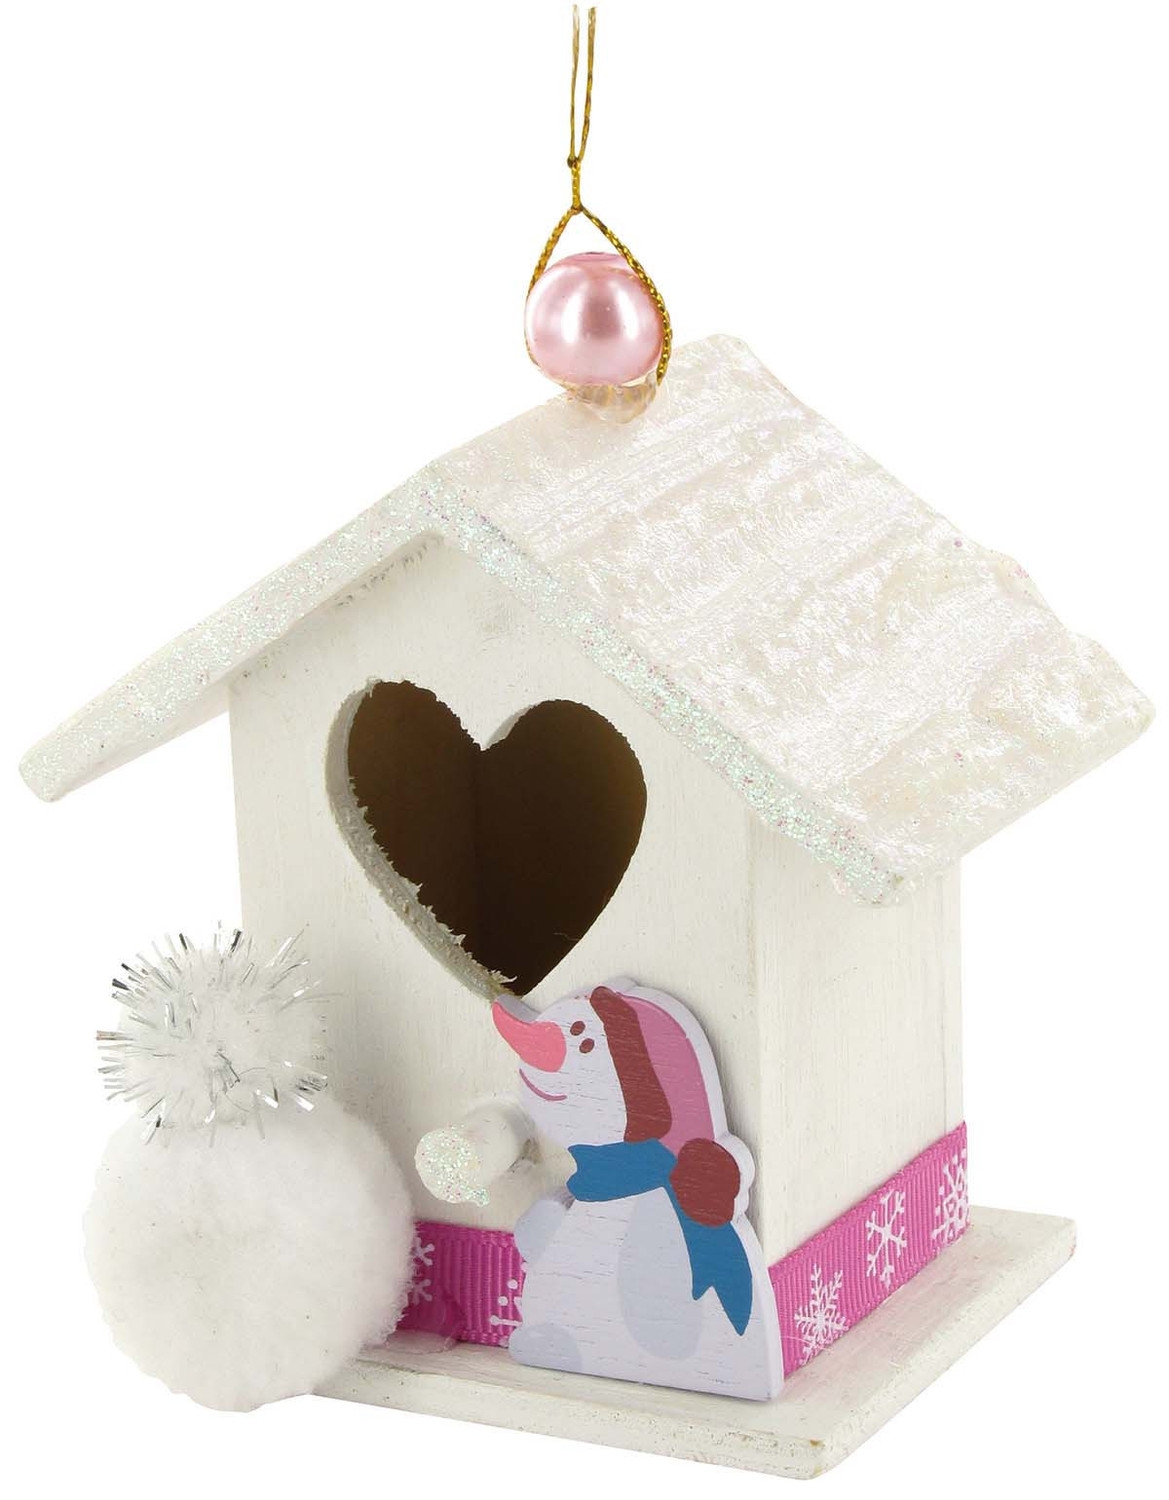 Mini-maison en bois à décorer coeur - Nichoir à oiseaux